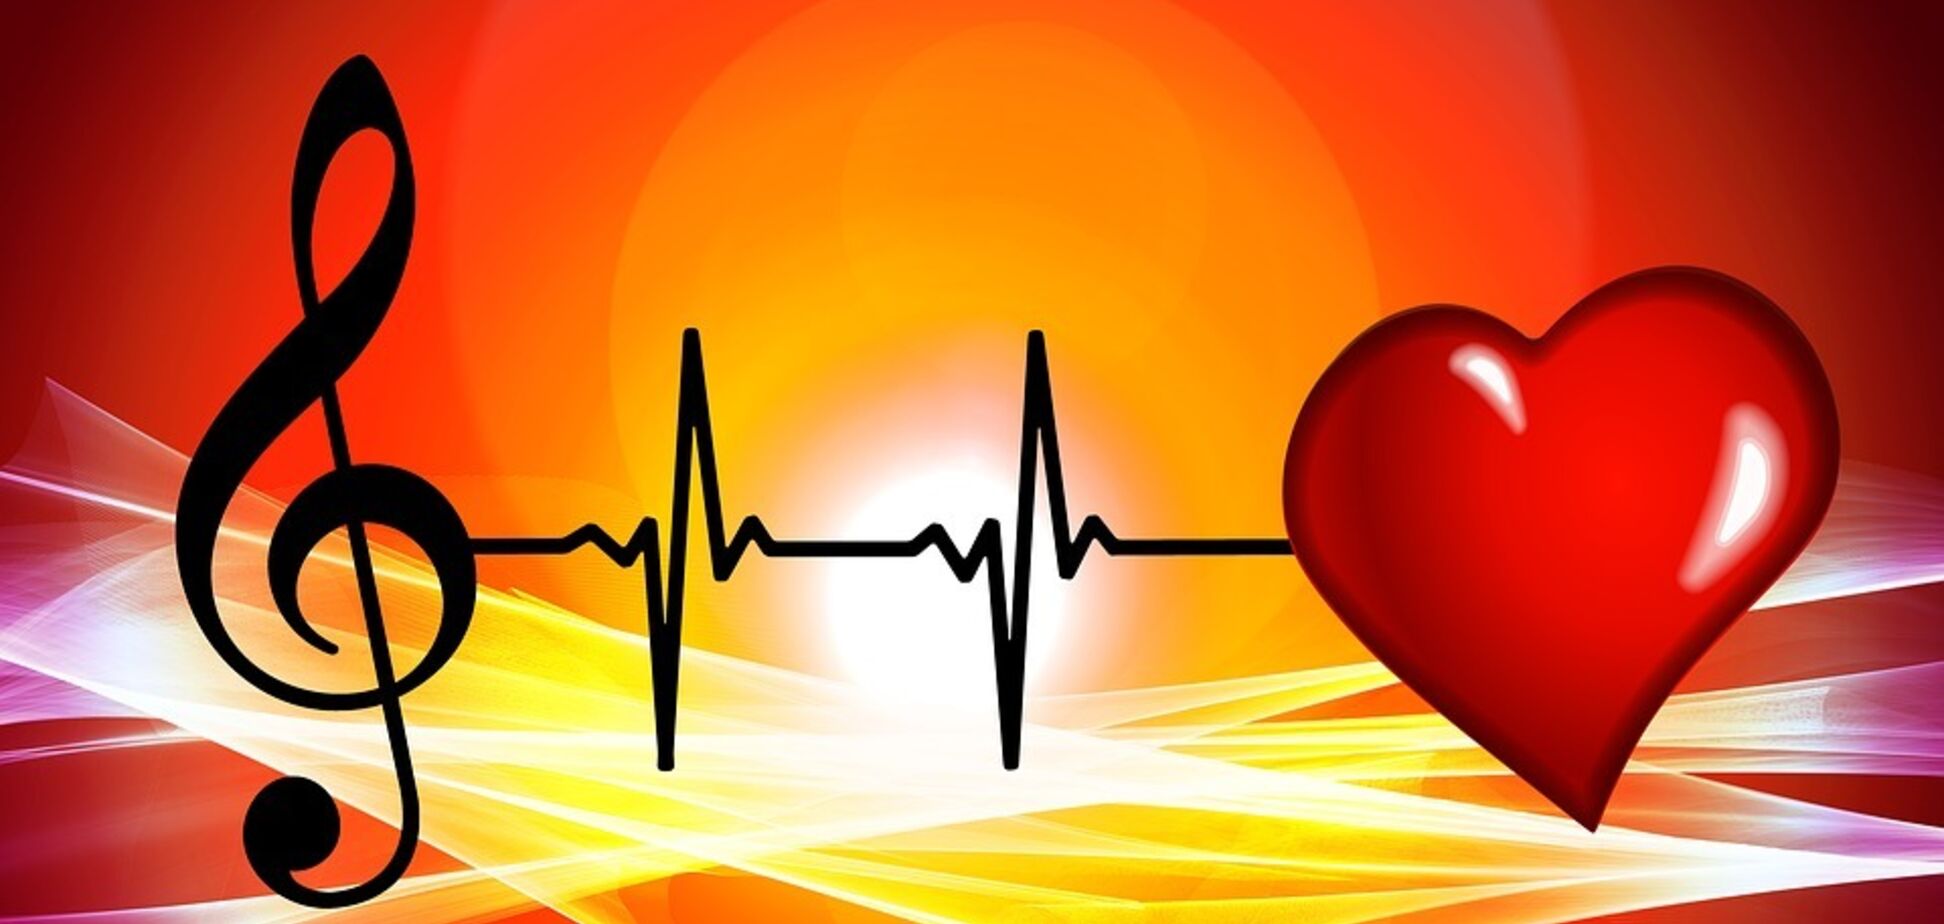 Відомі пісні перевірили лікарі і знайшли там симптоми серцевих хвороб